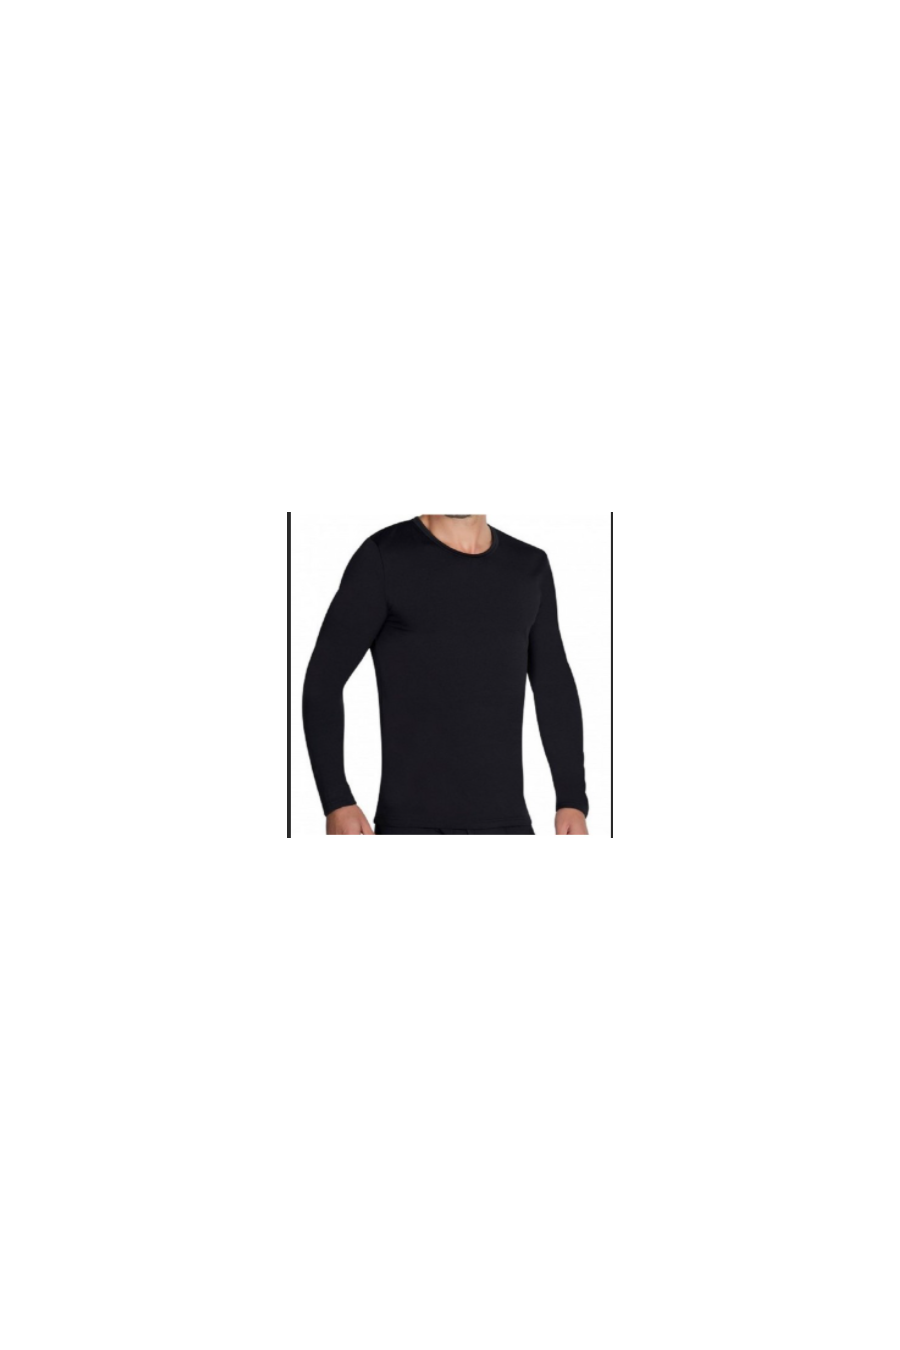 camiseta-termica-manga-larga-cuello-redondo-negra-70102